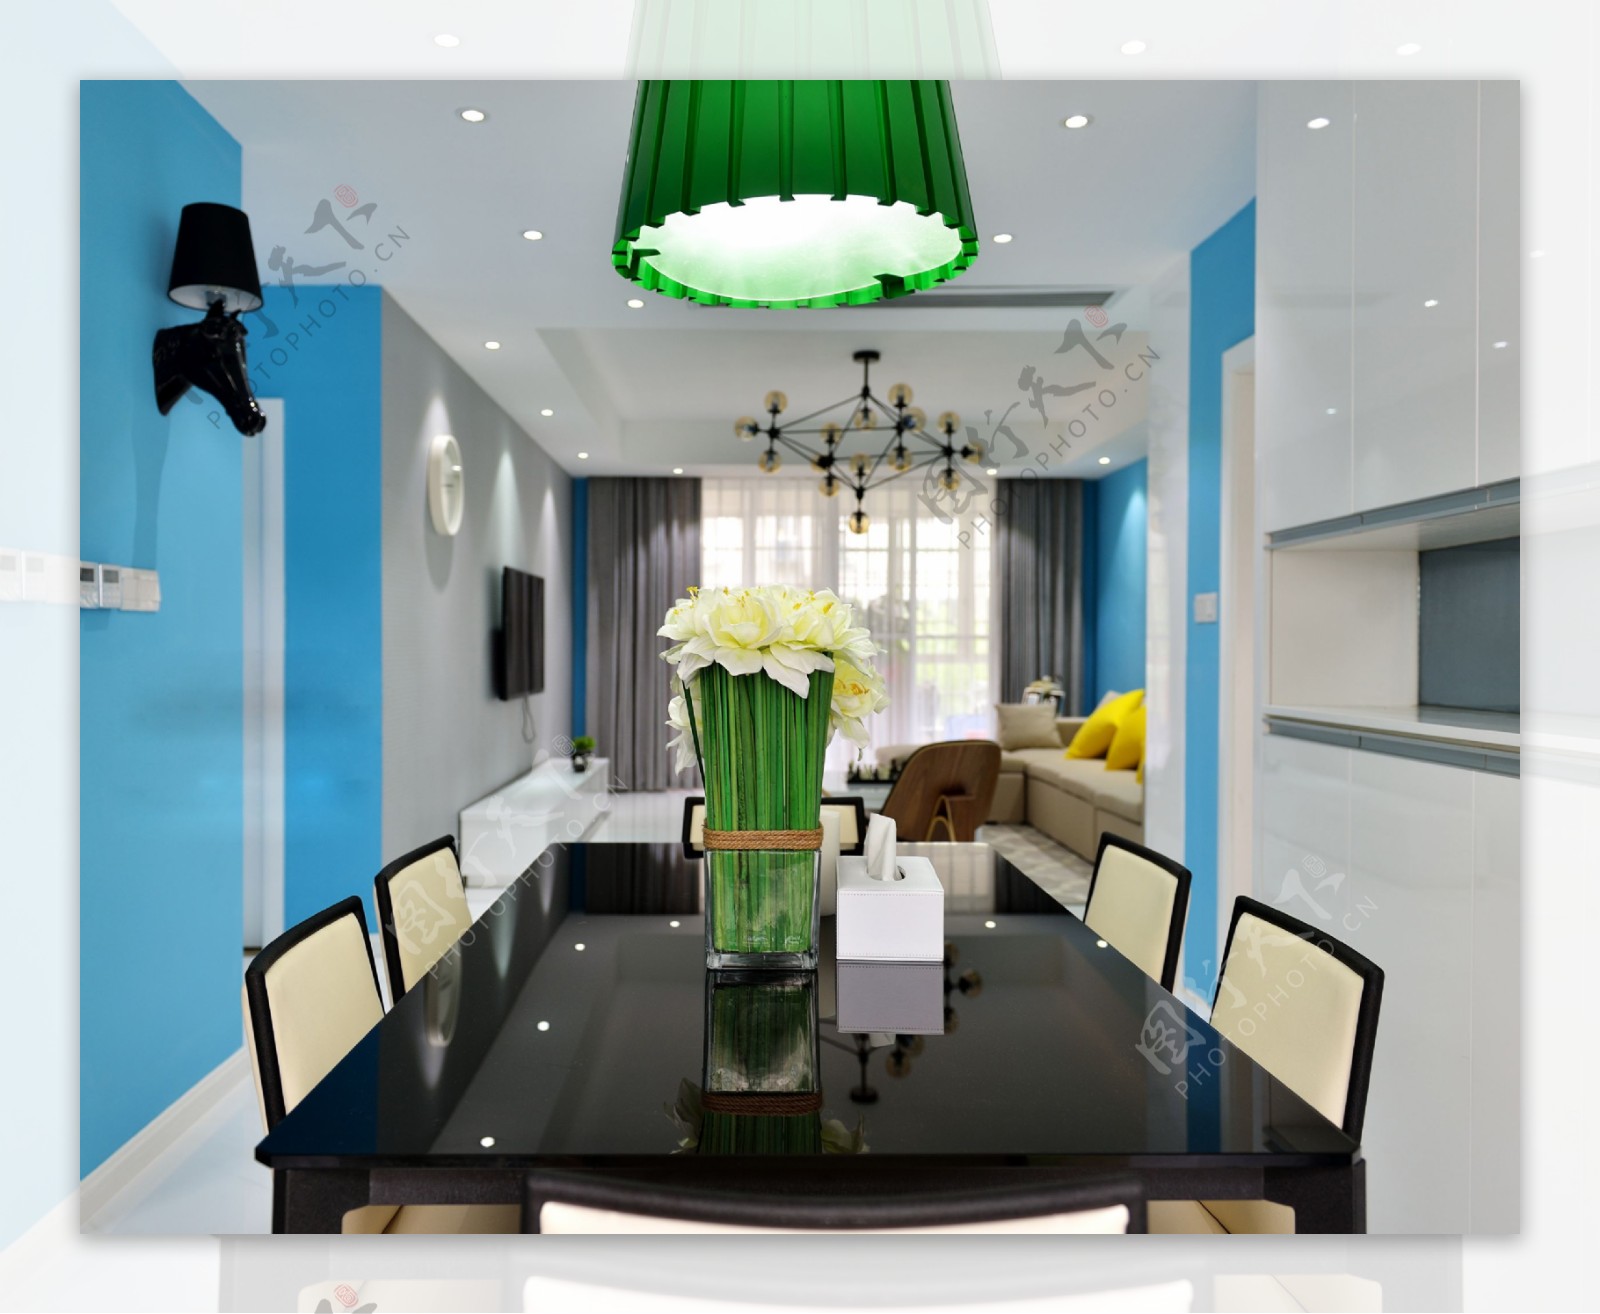 现代时尚客厅亮绿色吊灯室内装修效果图